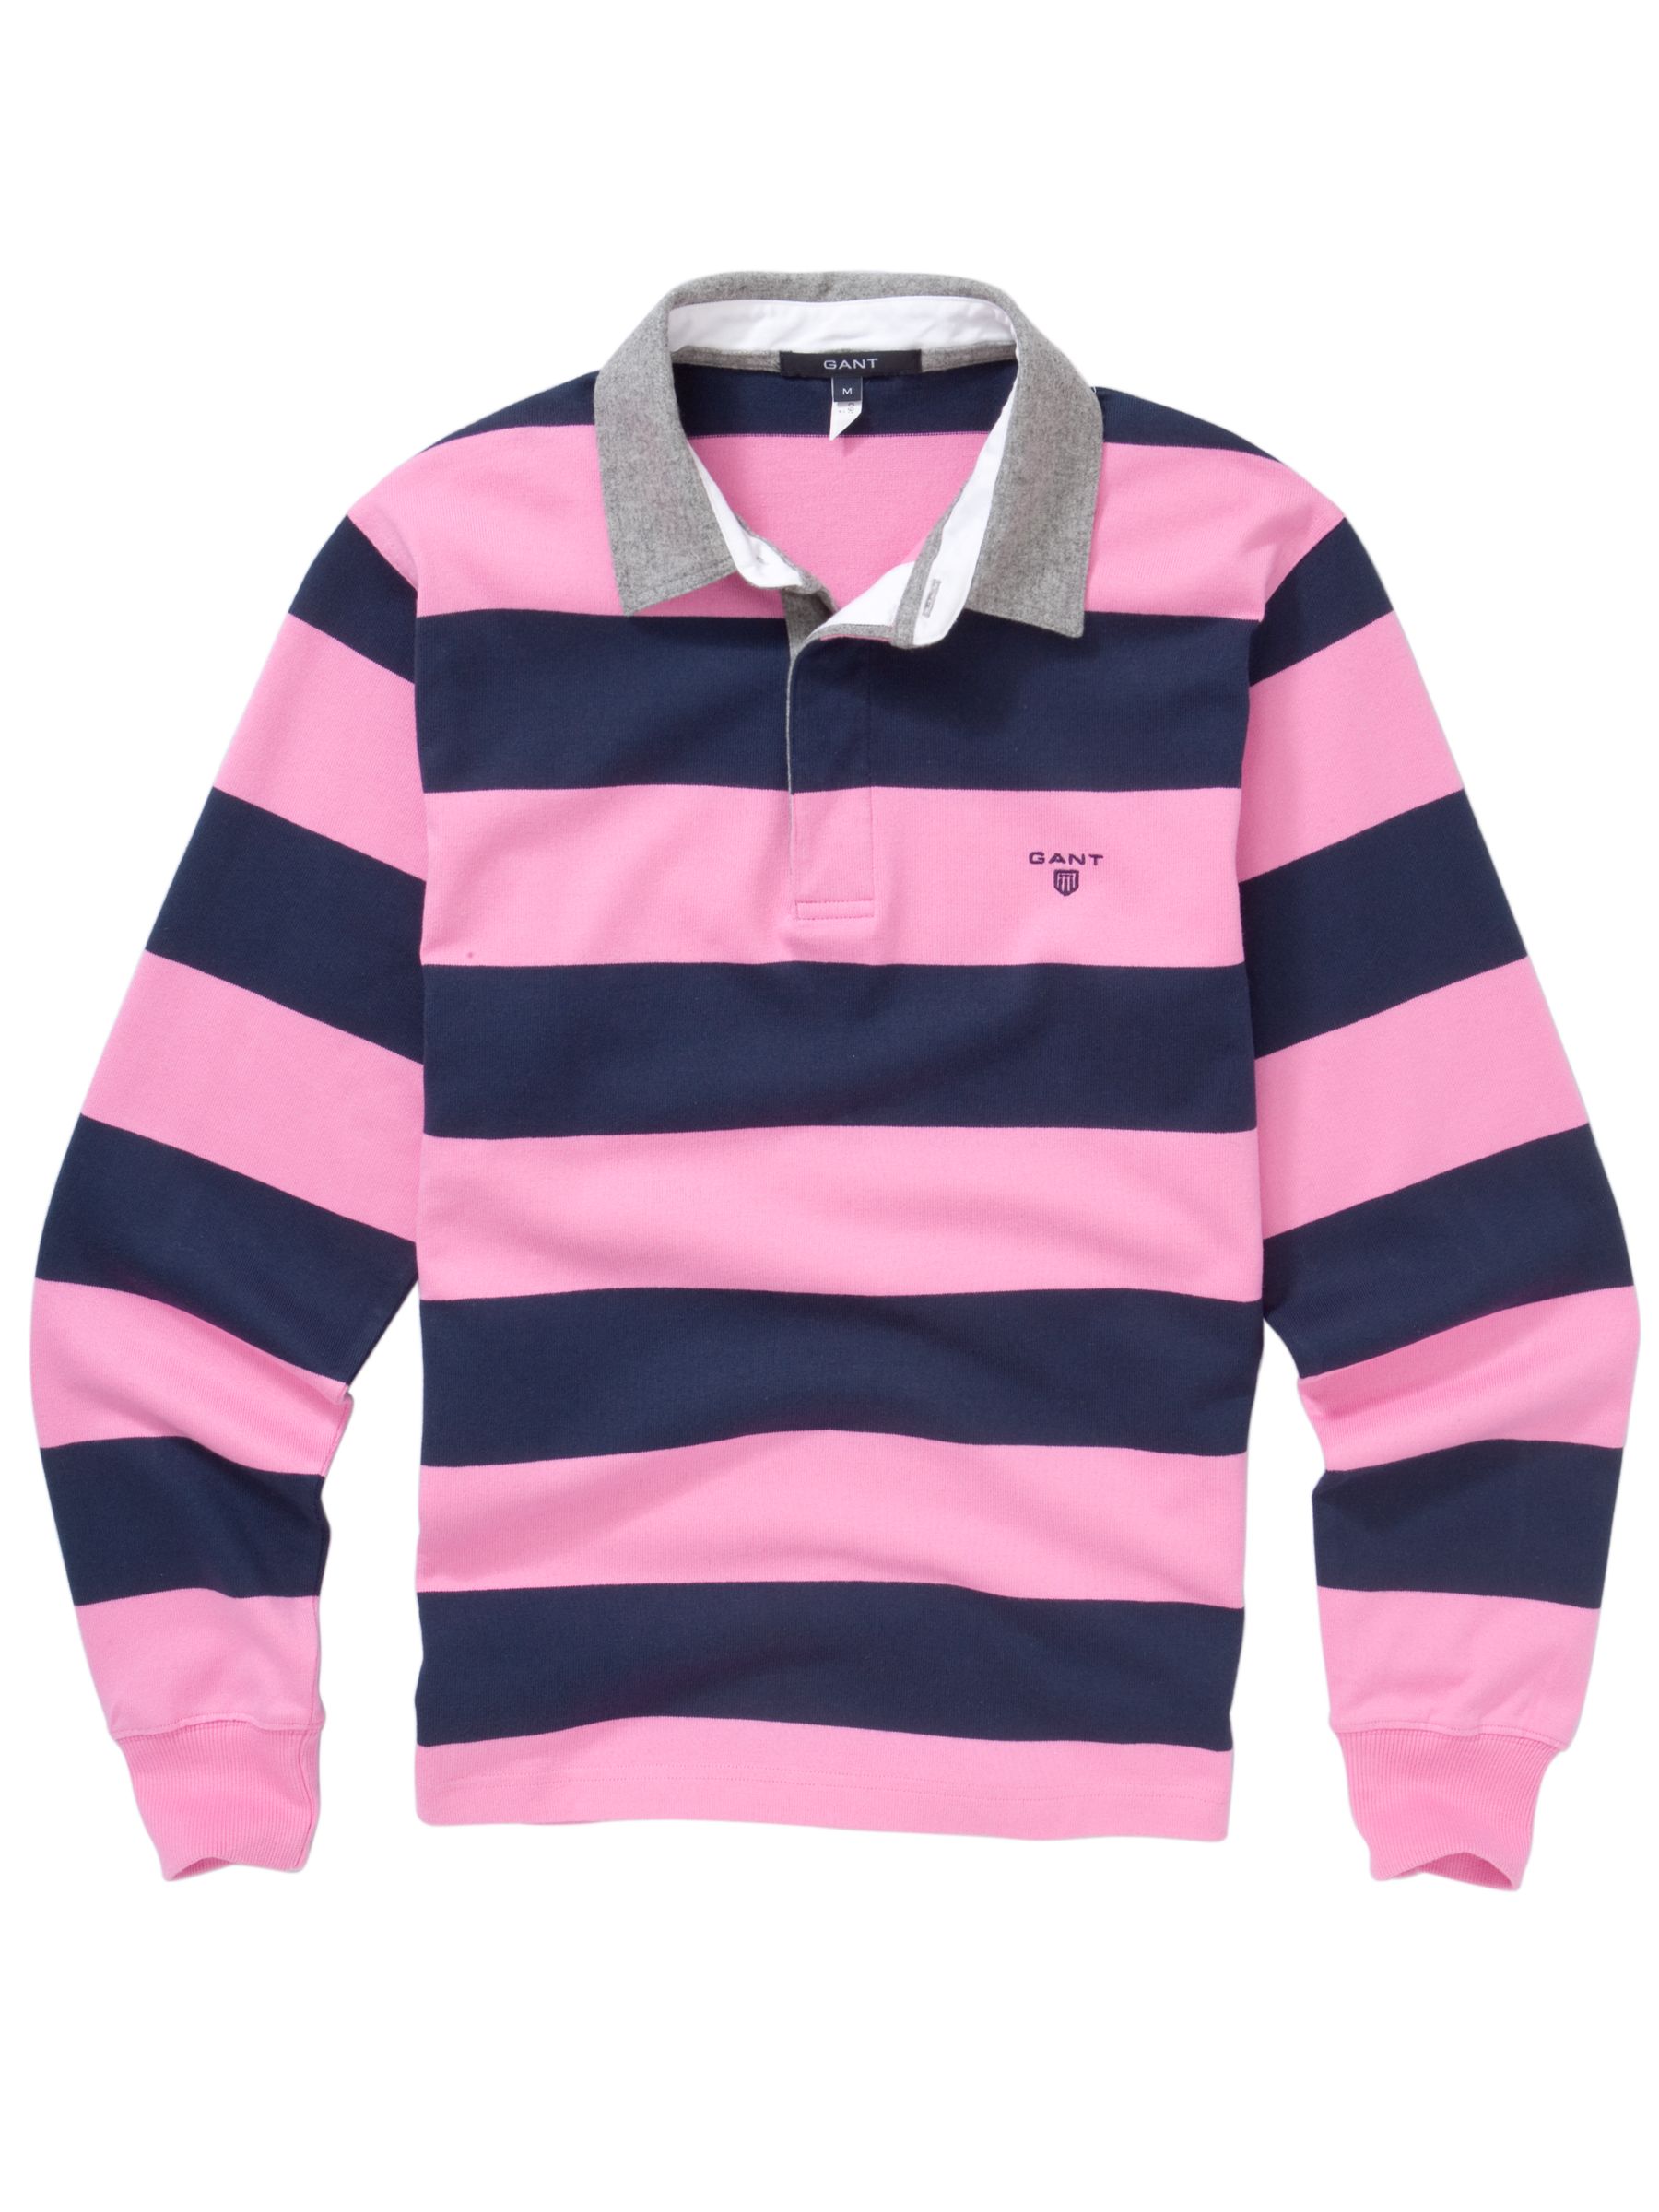 Gant Georgetown Bar Stripe Rugby Shirt, Pink/Navy